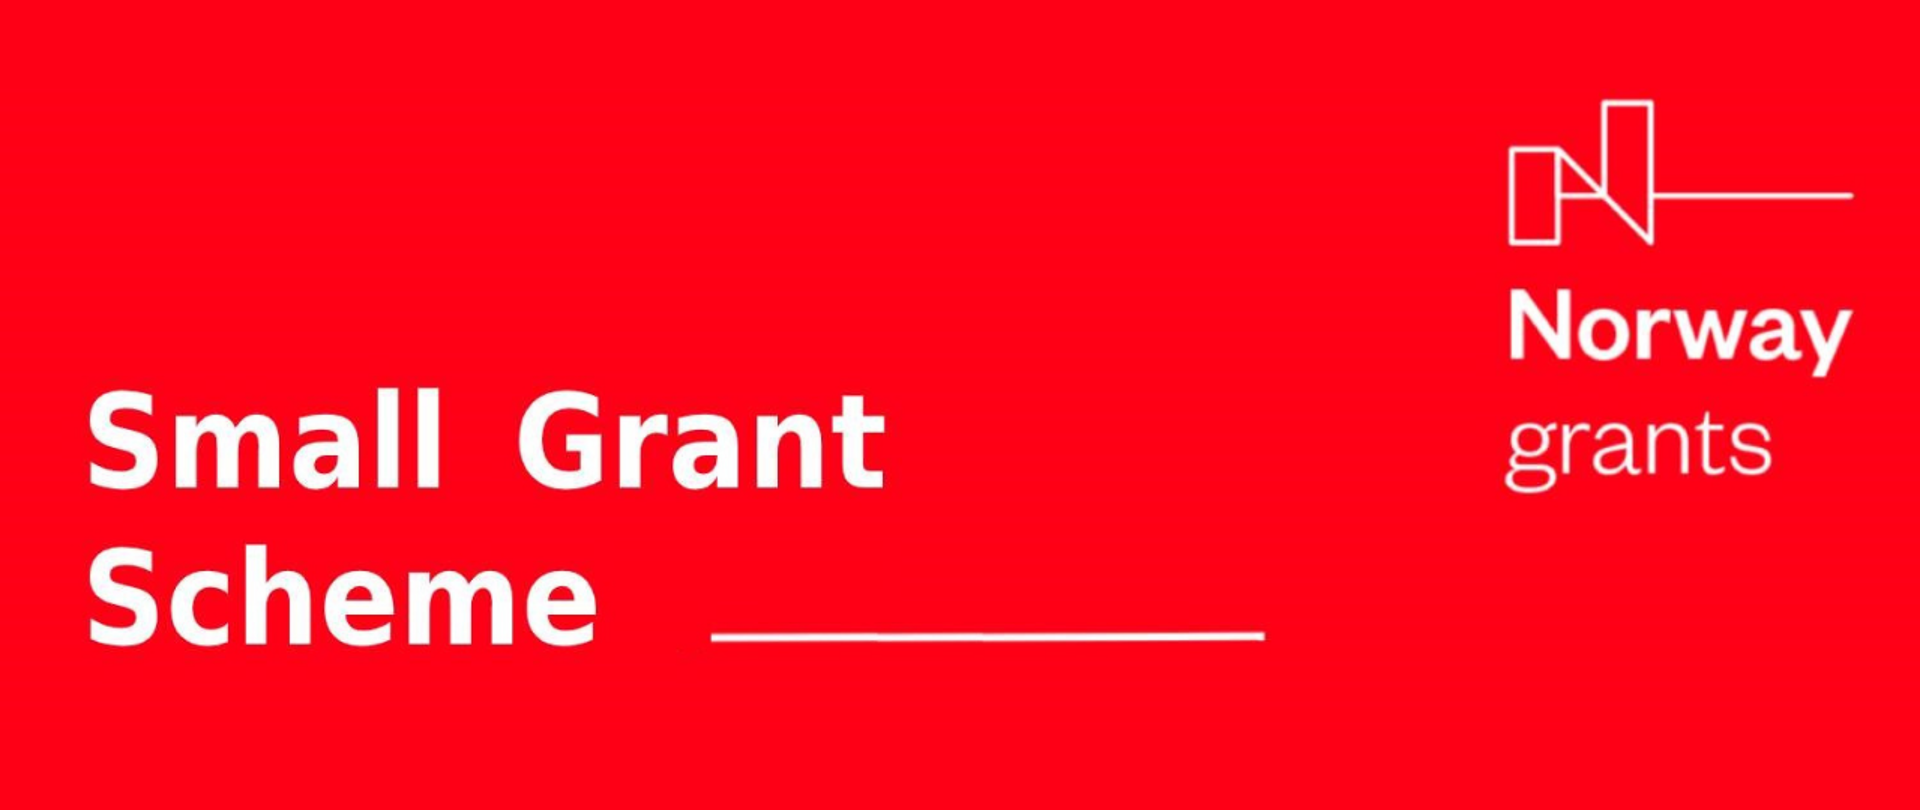 Na czerwonym tle napis SMall Grant Scheme, po prawo Logo Norway Grants, poniżej napis Norway grants